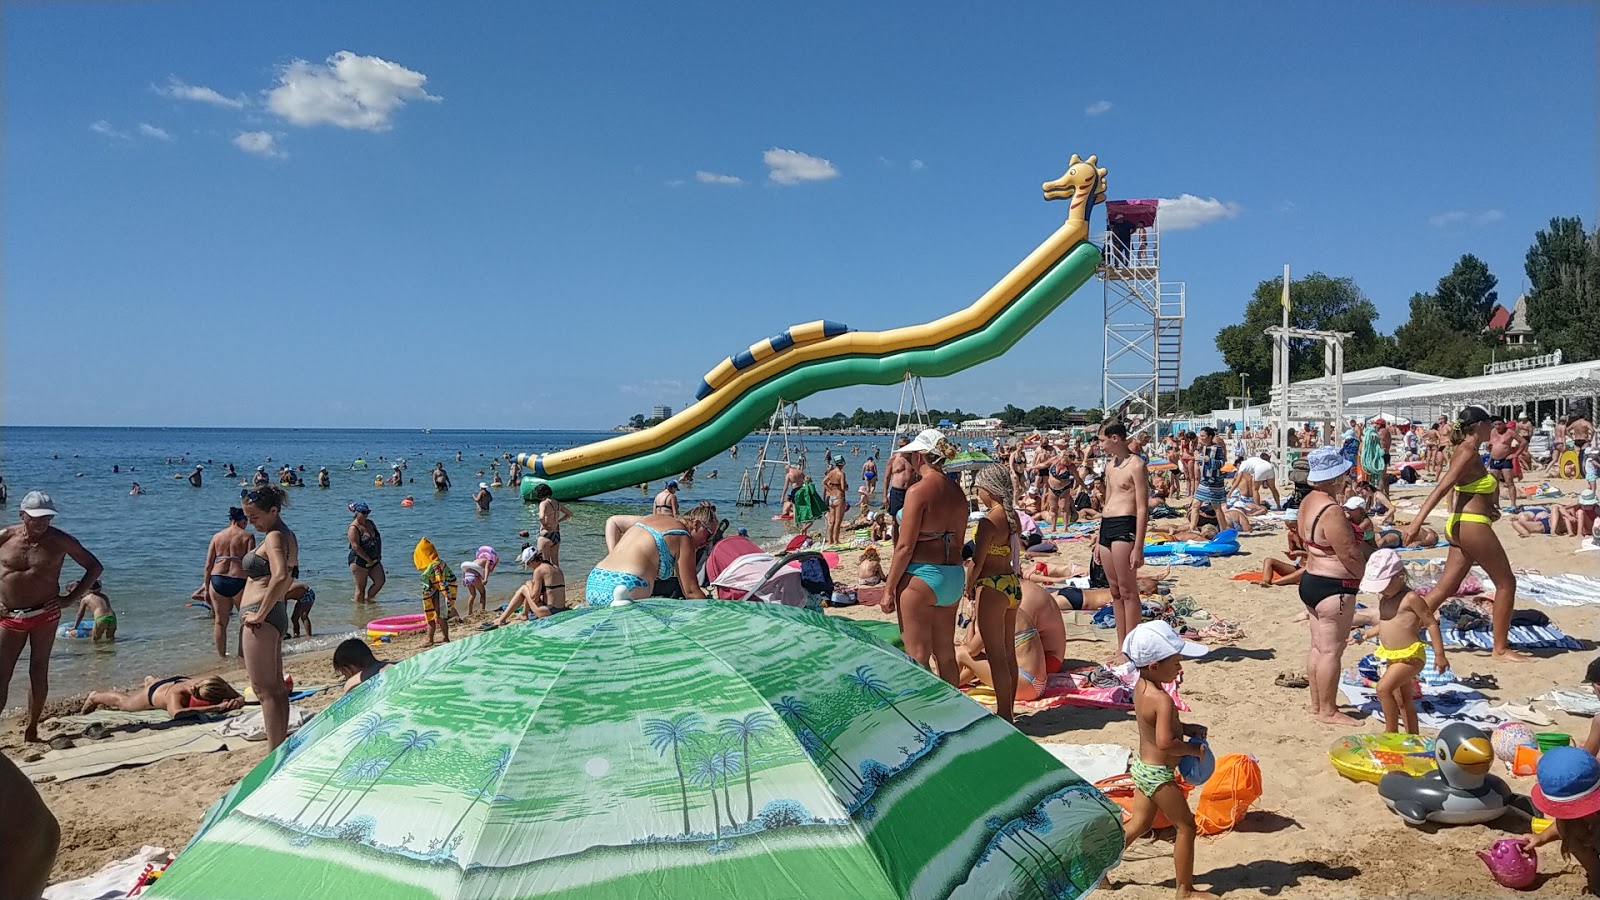 Foto af Oren-Crimea beach - populært sted blandt afslapningskendere